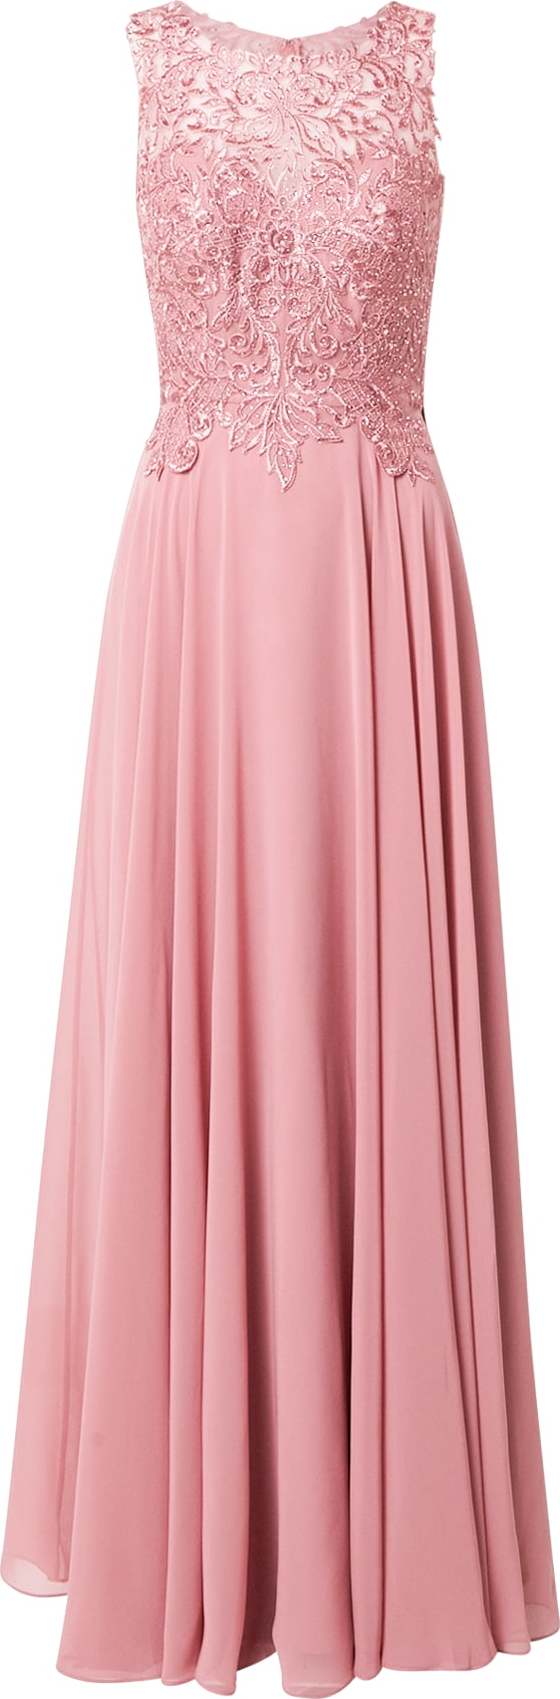 LUXUAR Společenské šaty pink